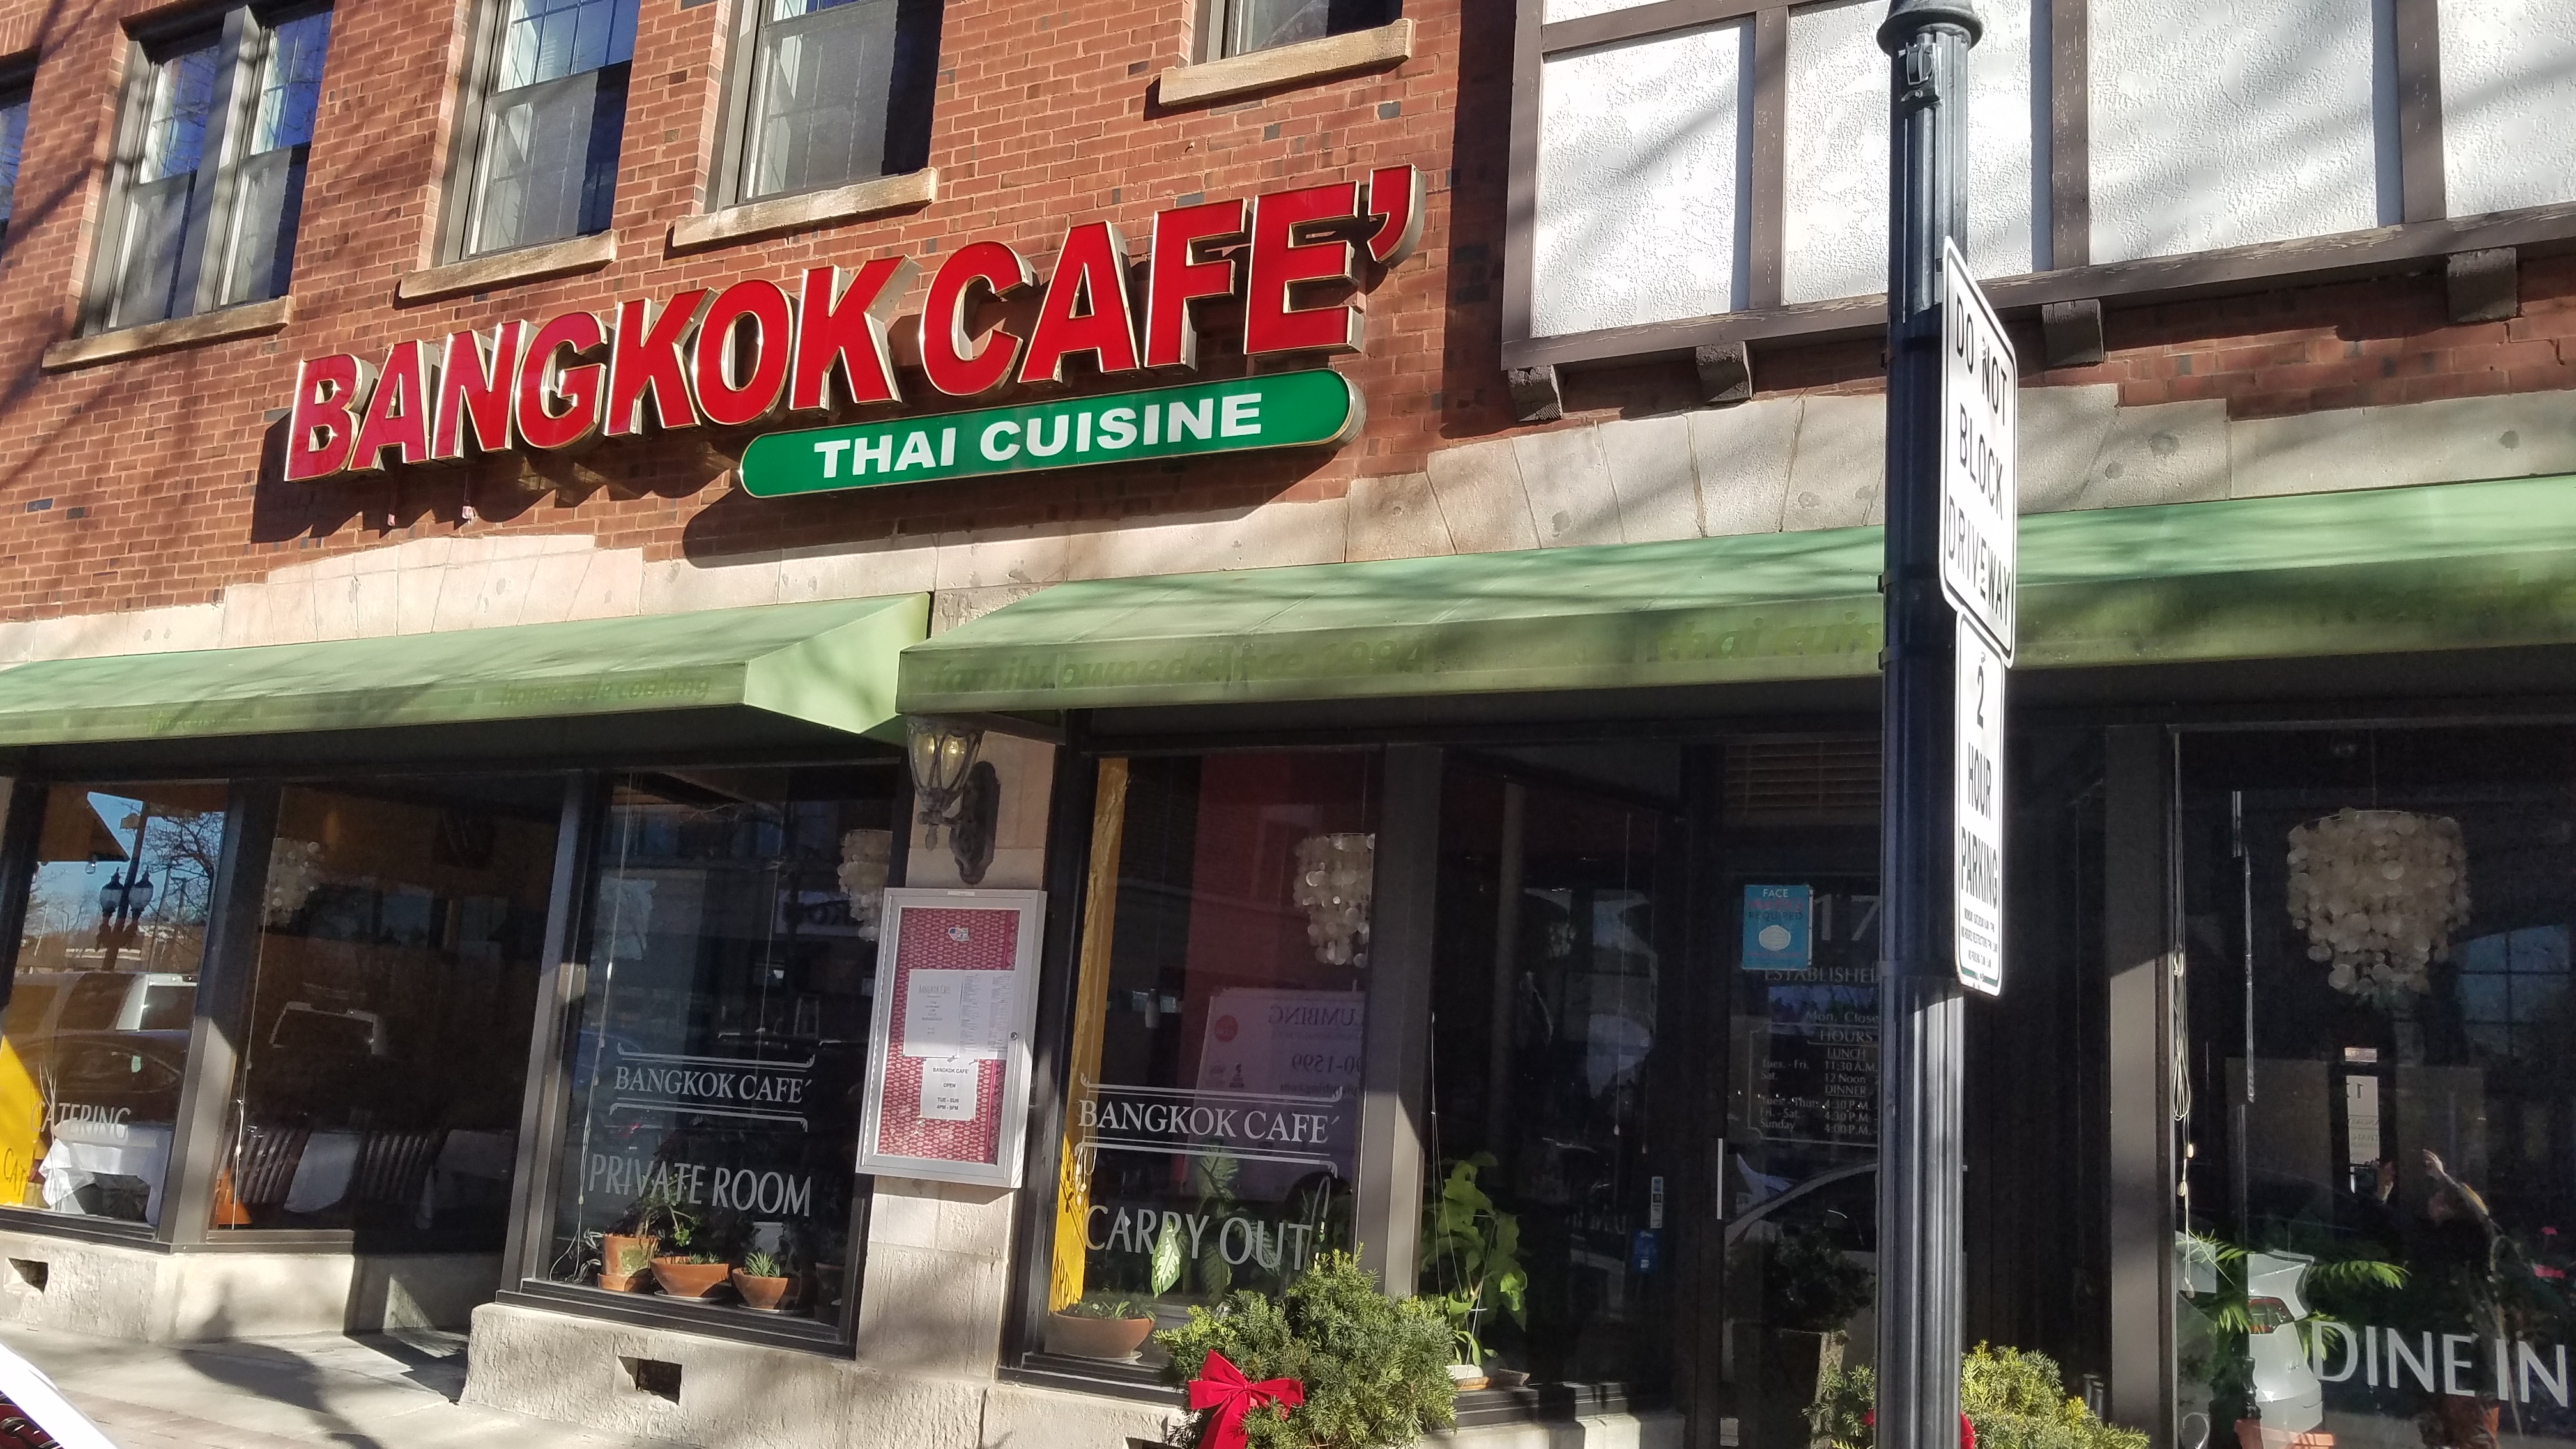 NM Café - Northbrook Restaurant - Chicago, IL